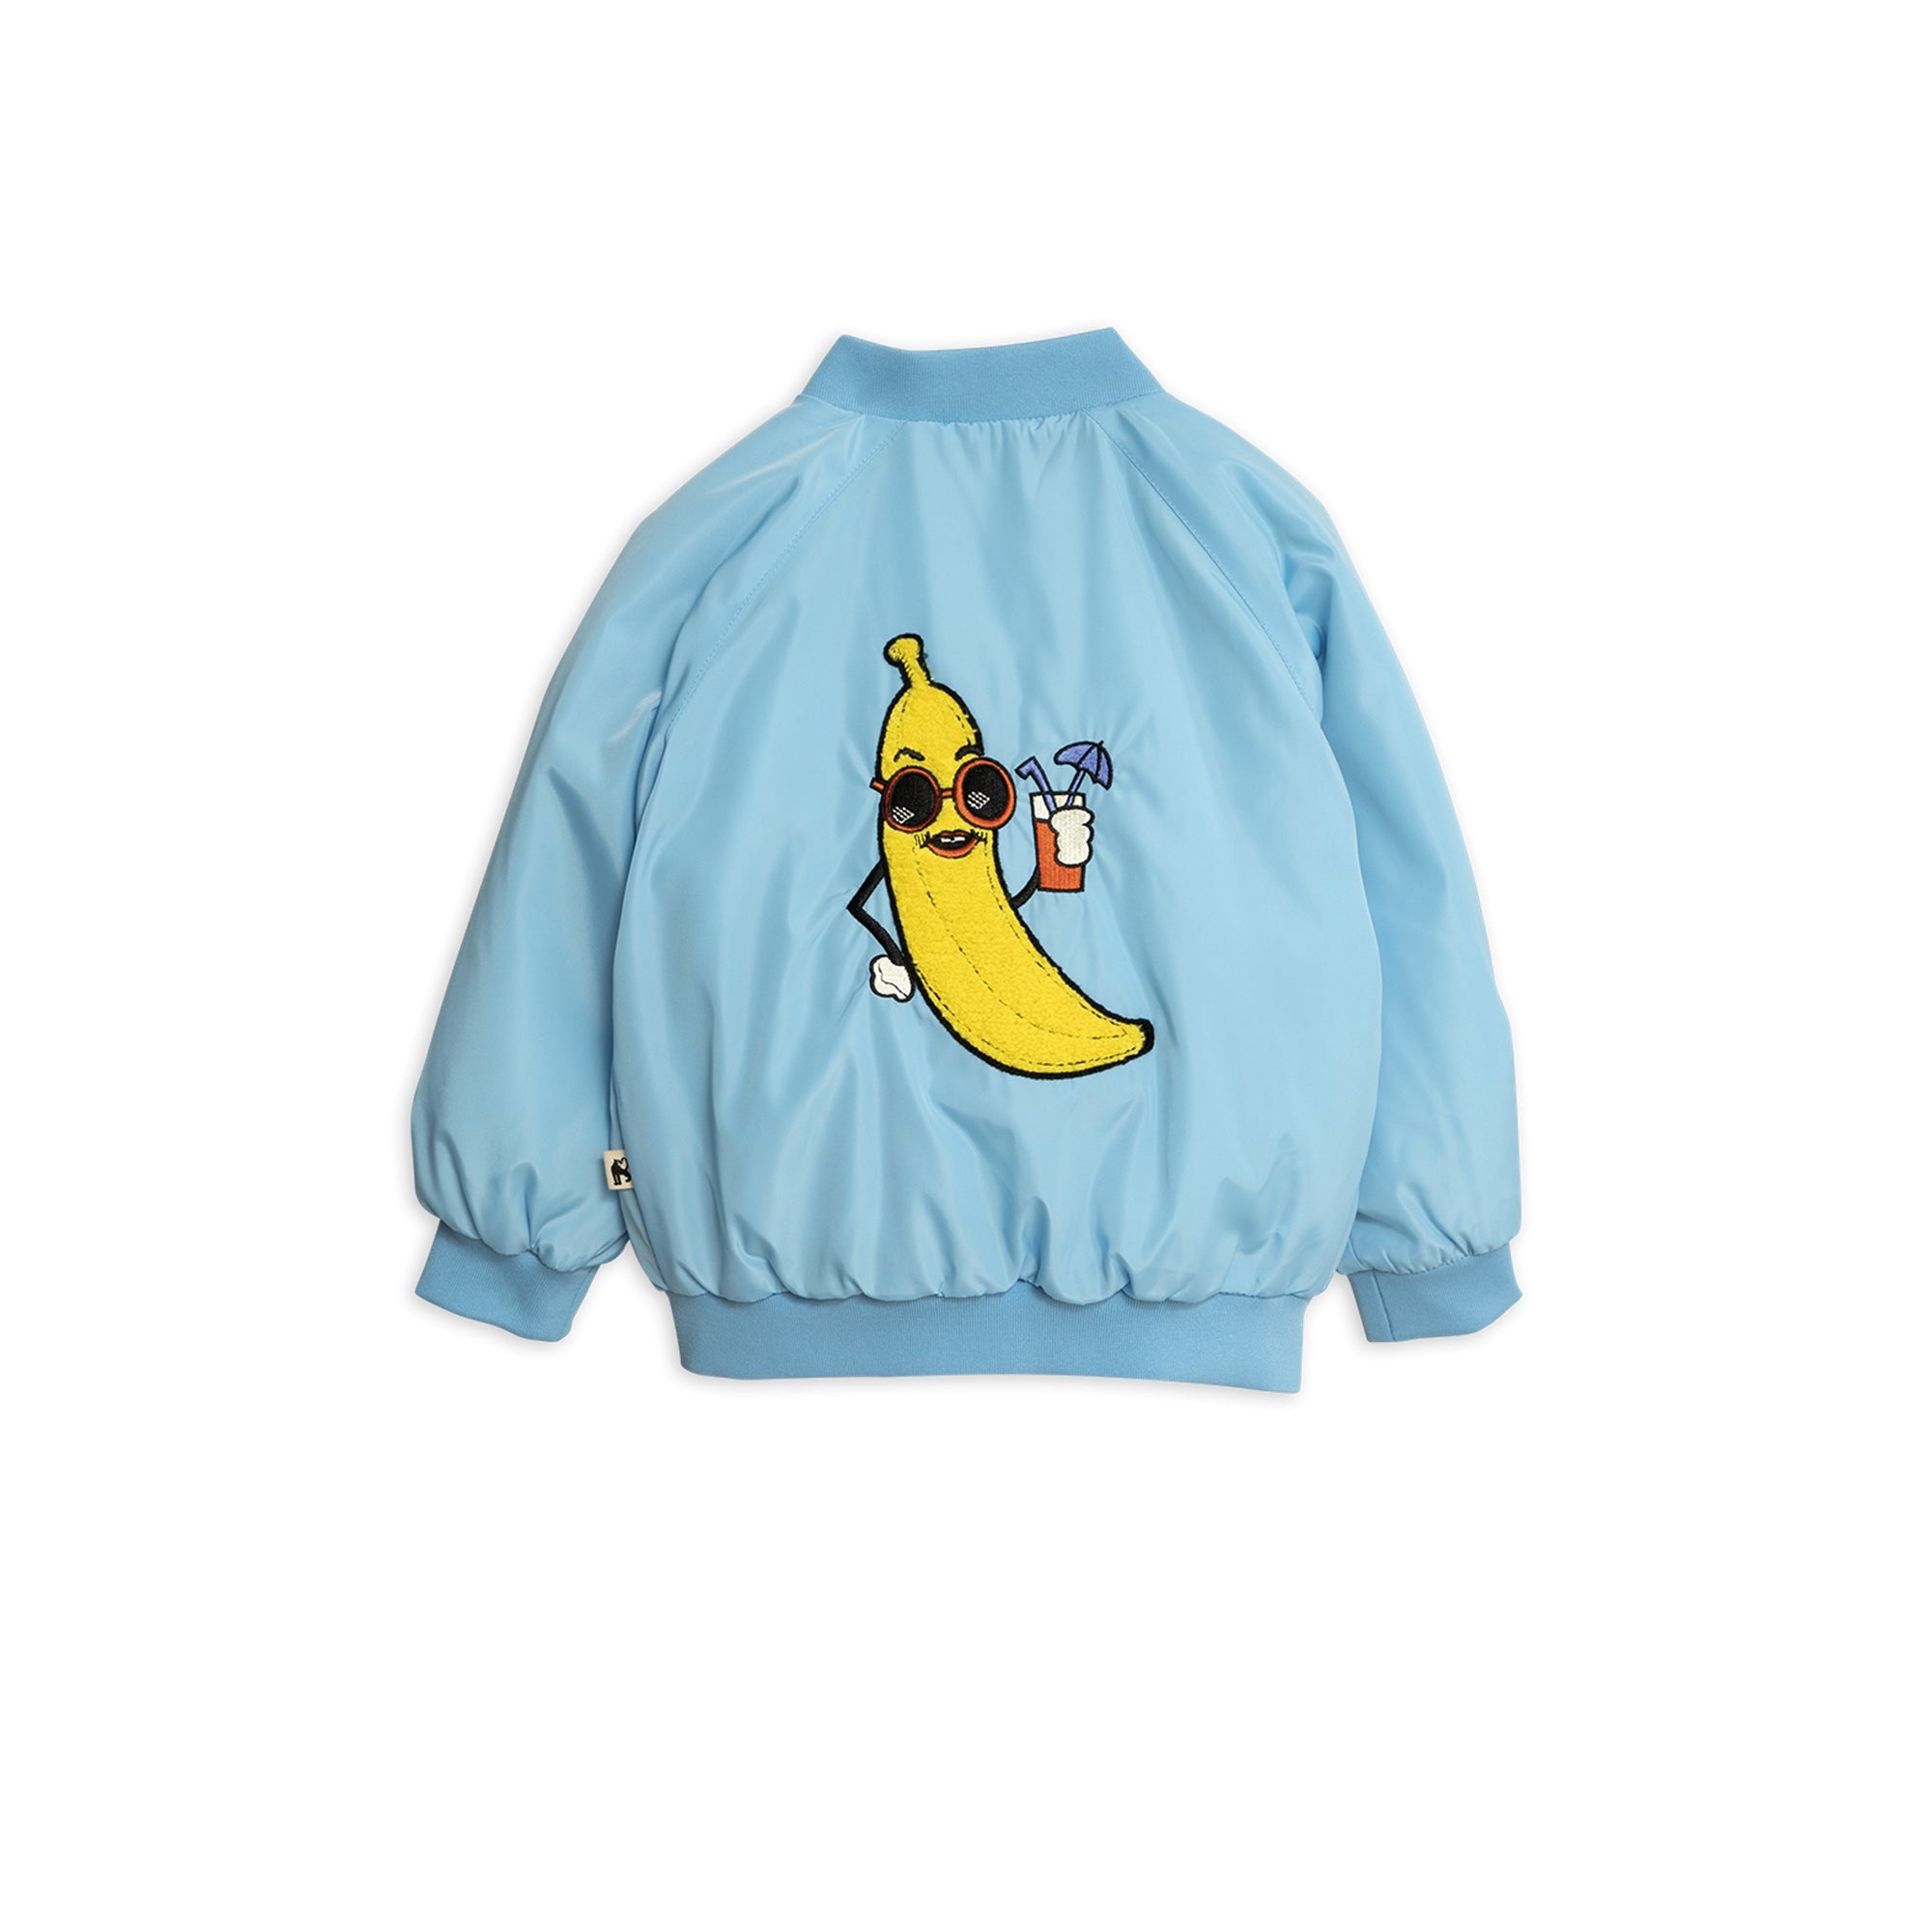 Boys Light Blue Banana Baseball Jacket